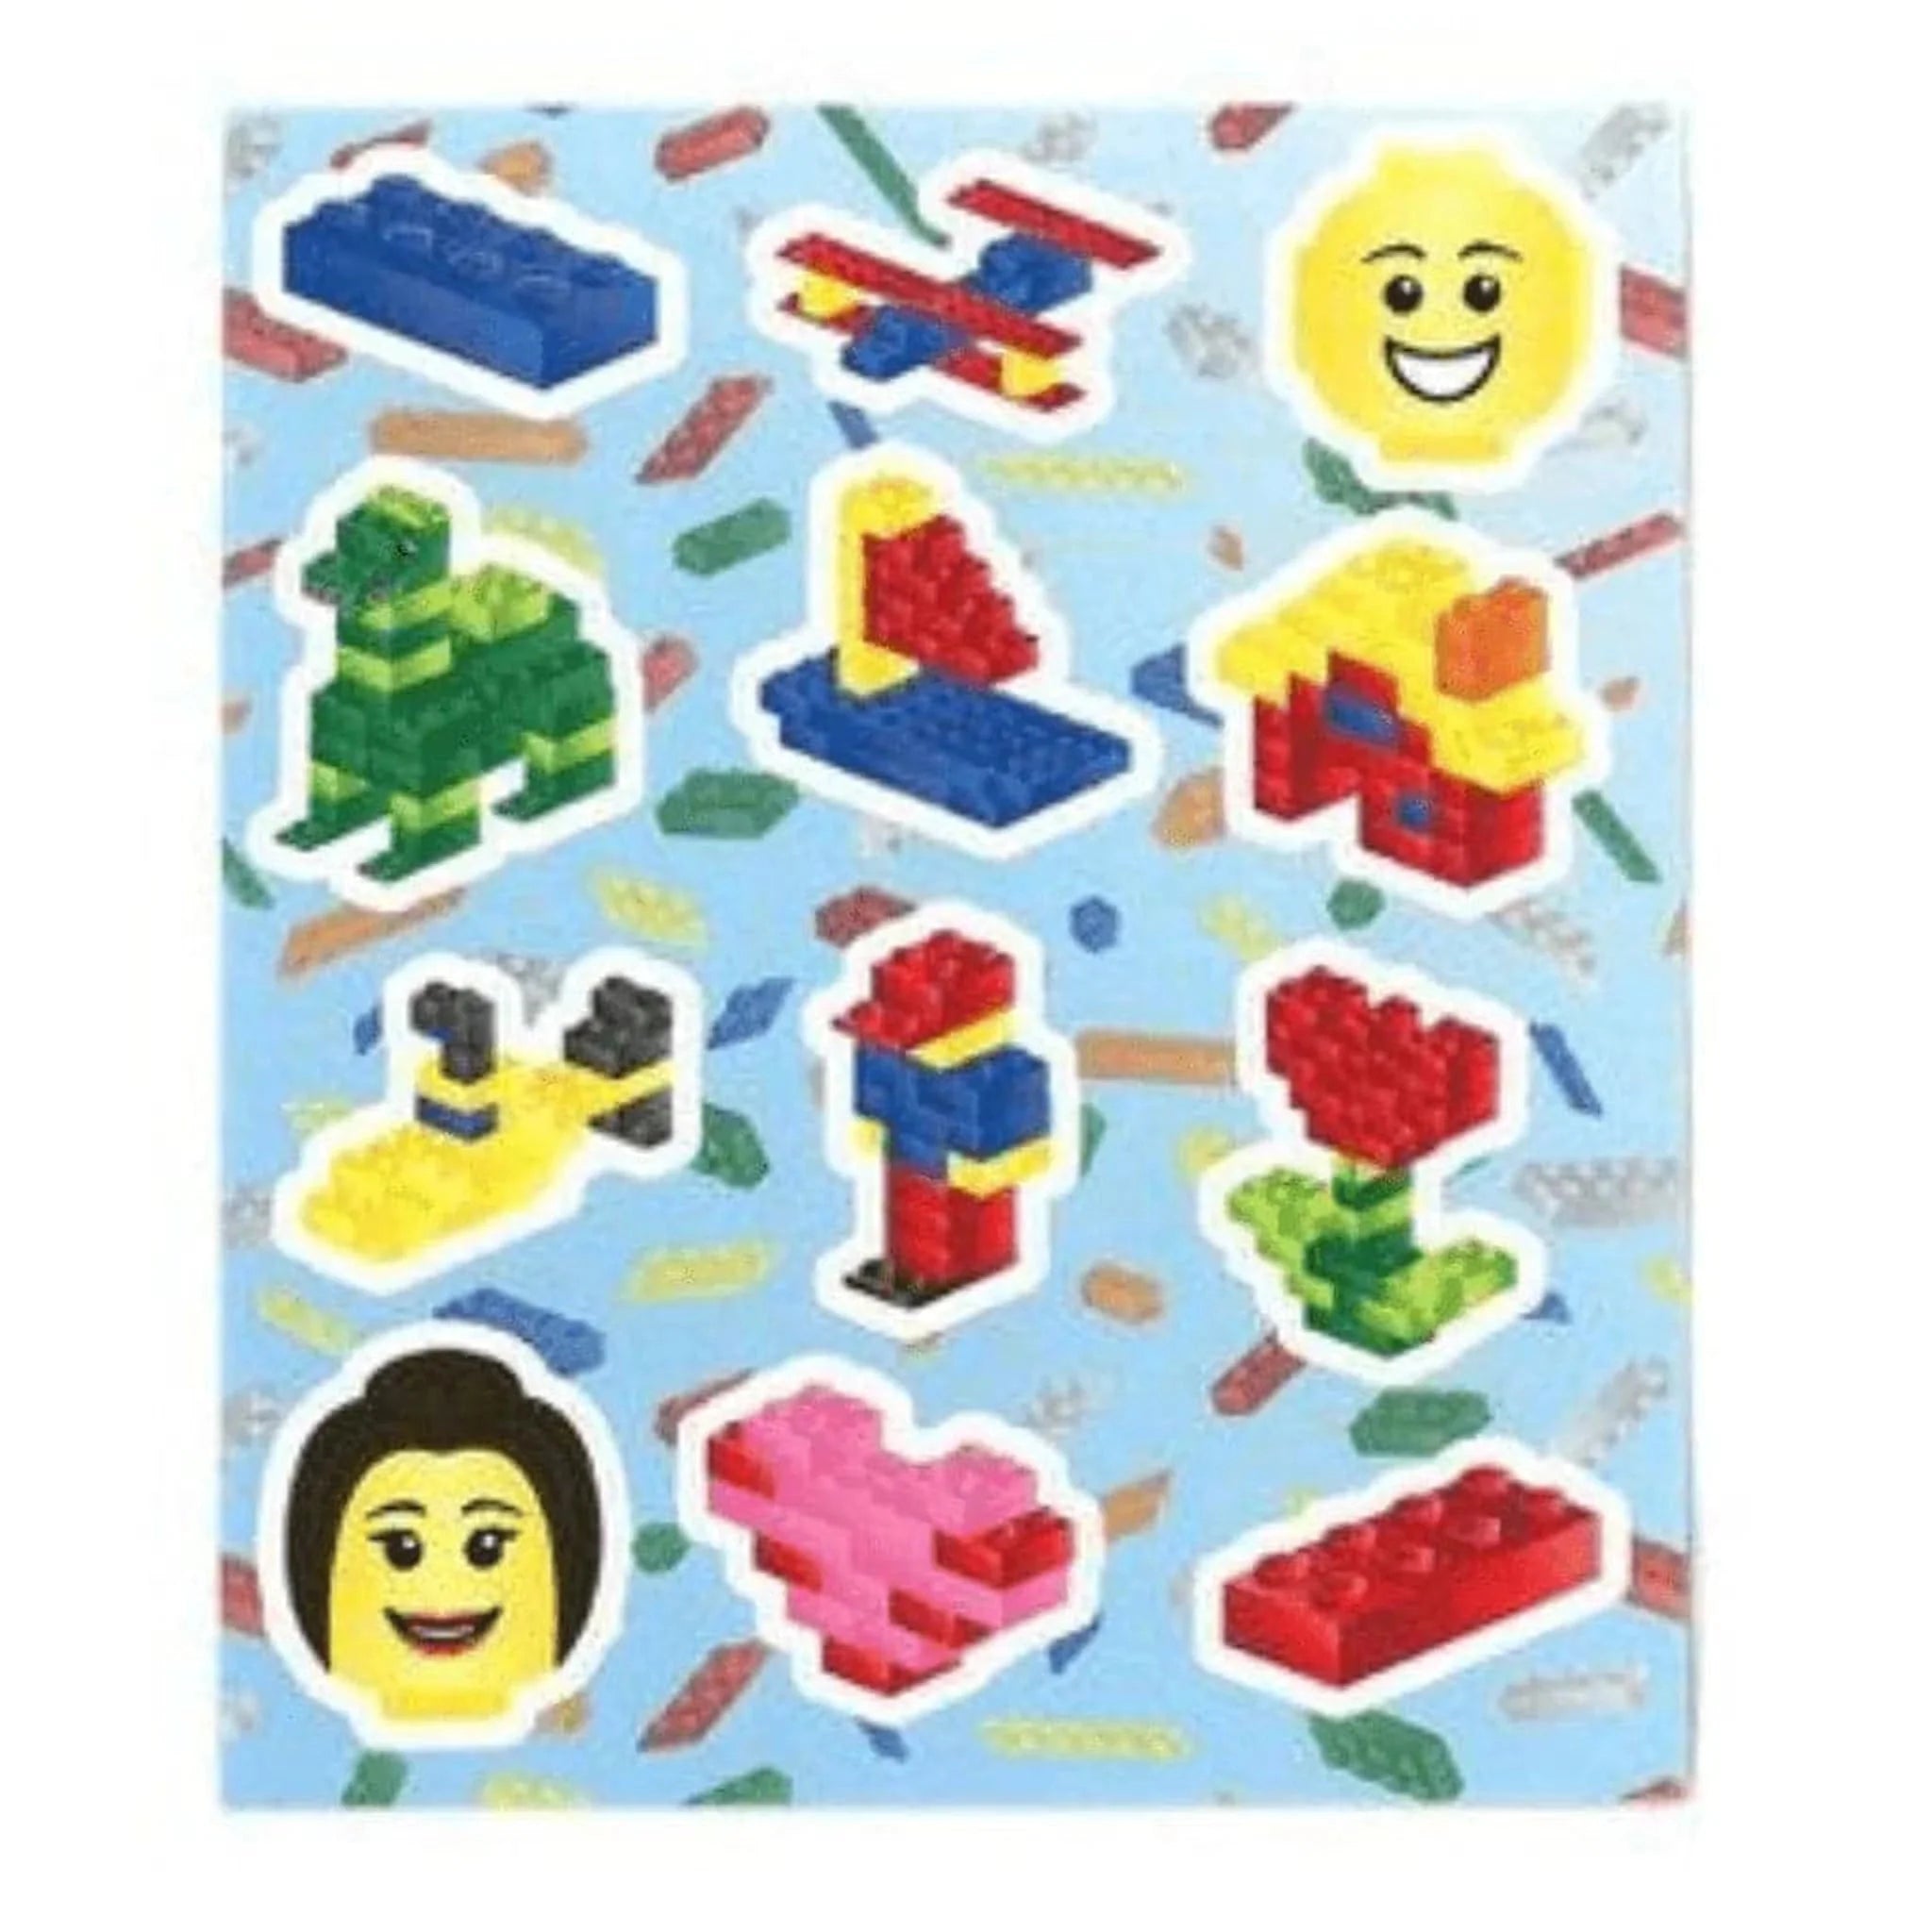 Brickz Sticker Sheet - Kids Party Craft